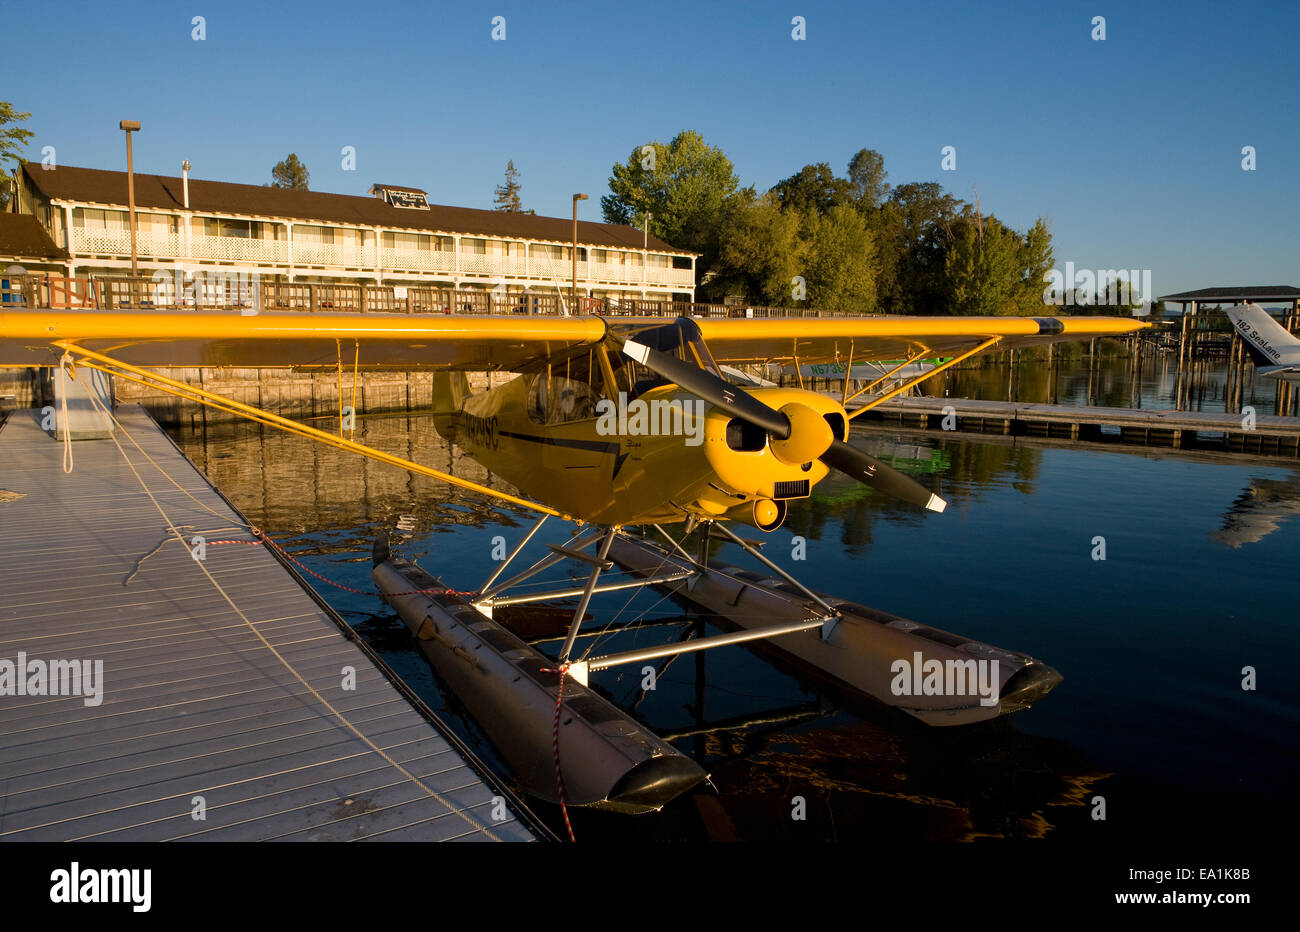 Piper Super Cub sur flotteurs amarré au quai Alouette Shores Resort, hydravion, Splash-In Lakeport, en Californie, le comté de Lake, Cali Banque D'Images